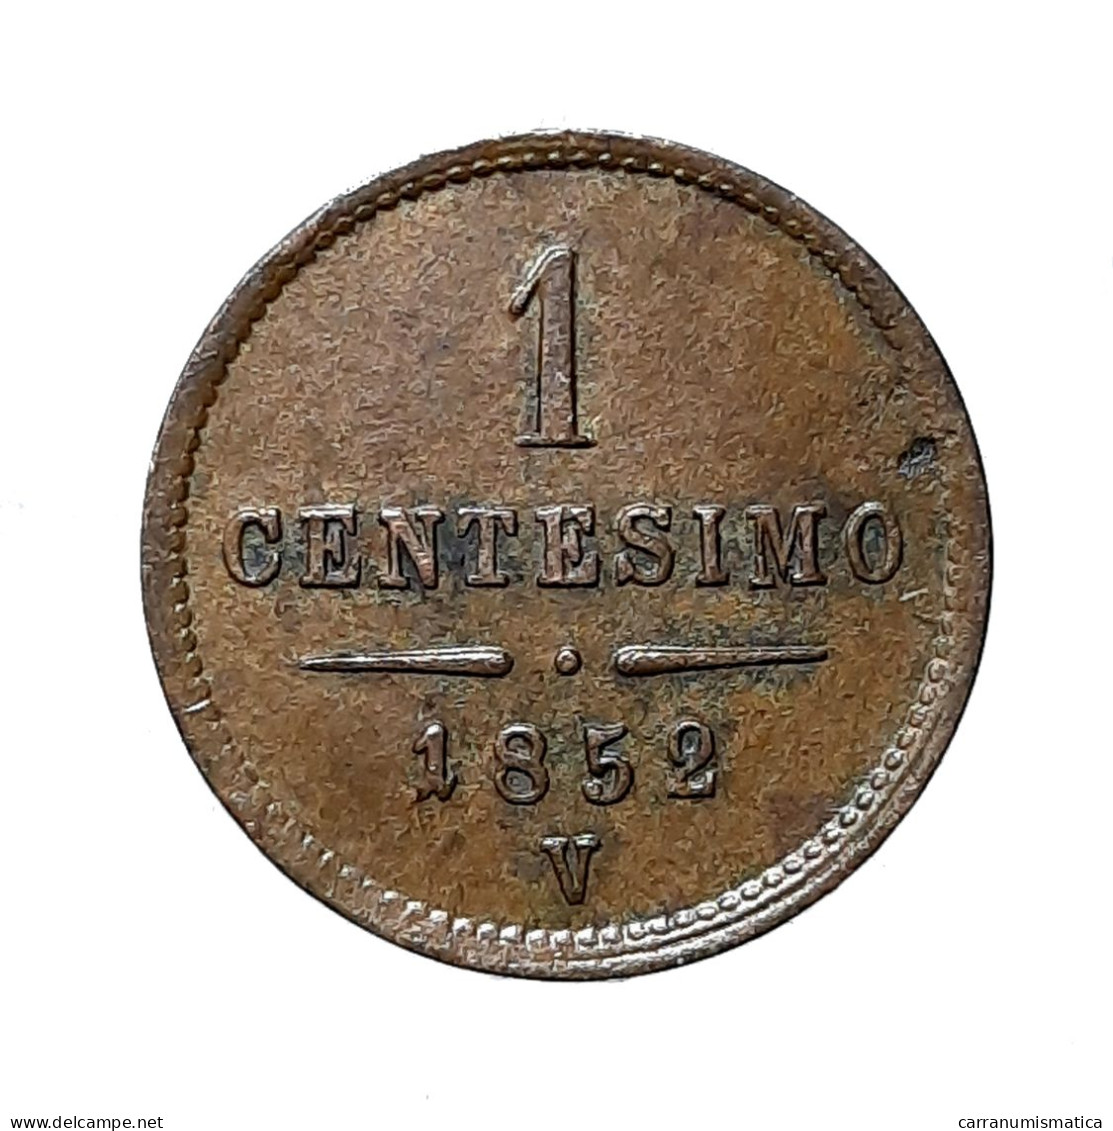 [NC] LOMBARDO VENETO - 1 CENTESIMO 1852 VENEZIA (k0351) - Lombardien-Venezia